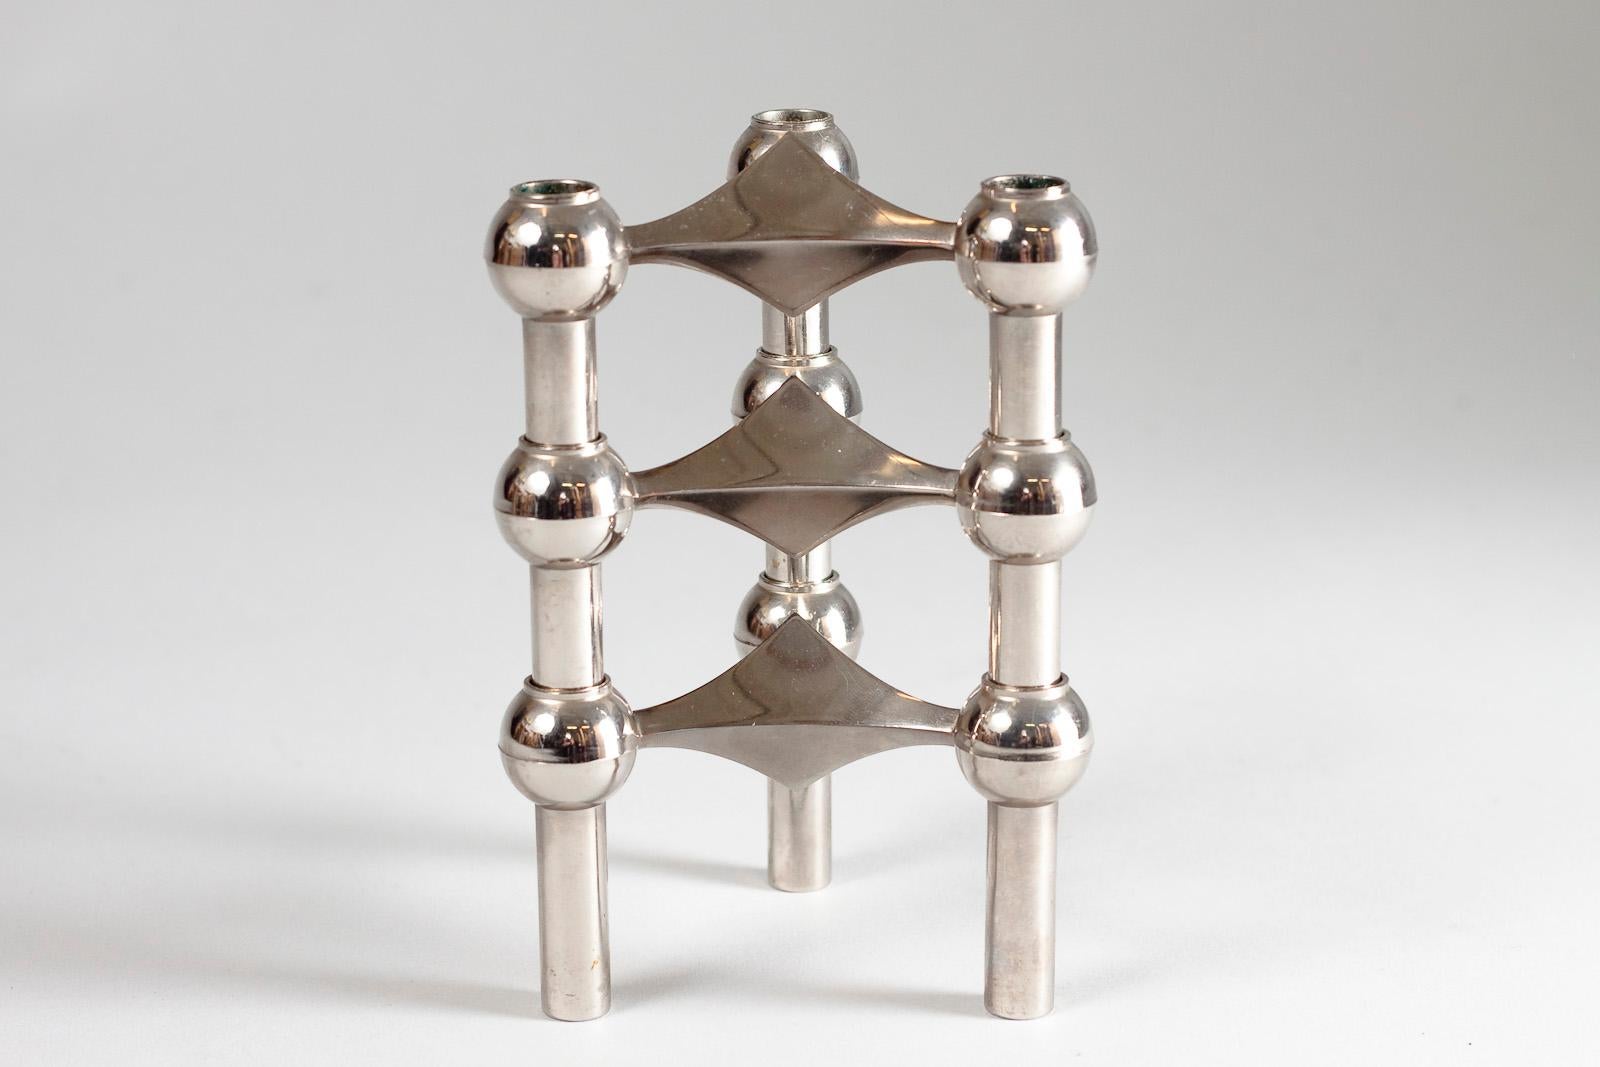 Modular set of candleholder designed by Werner Stoff in the 1960s for STOFF Nagel, Denmark.